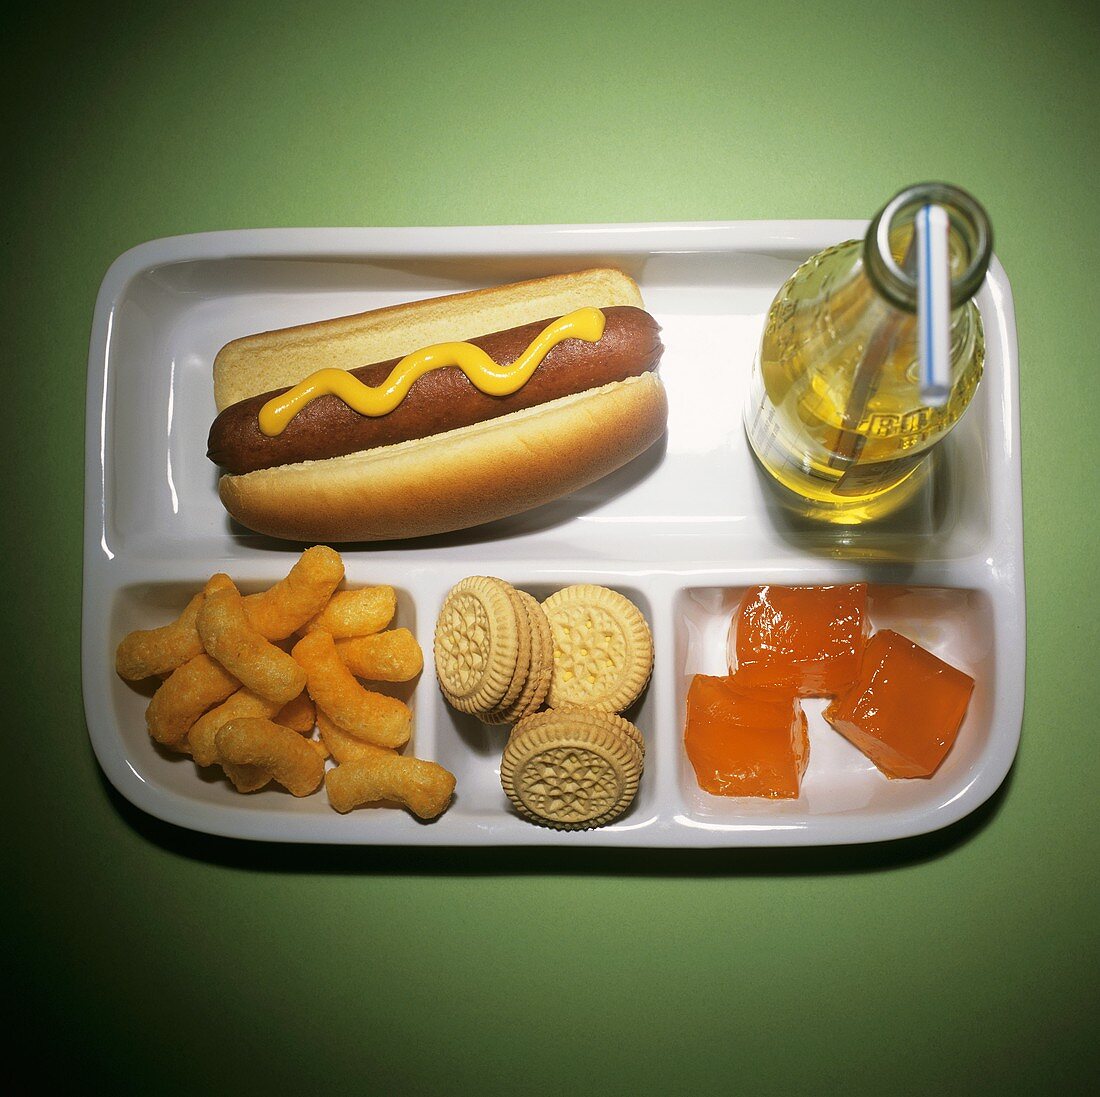 Tablett mit Hot Dog, Erdnussflips, Keksen, Geleewürfeln und Limo (Fernsehlunch)